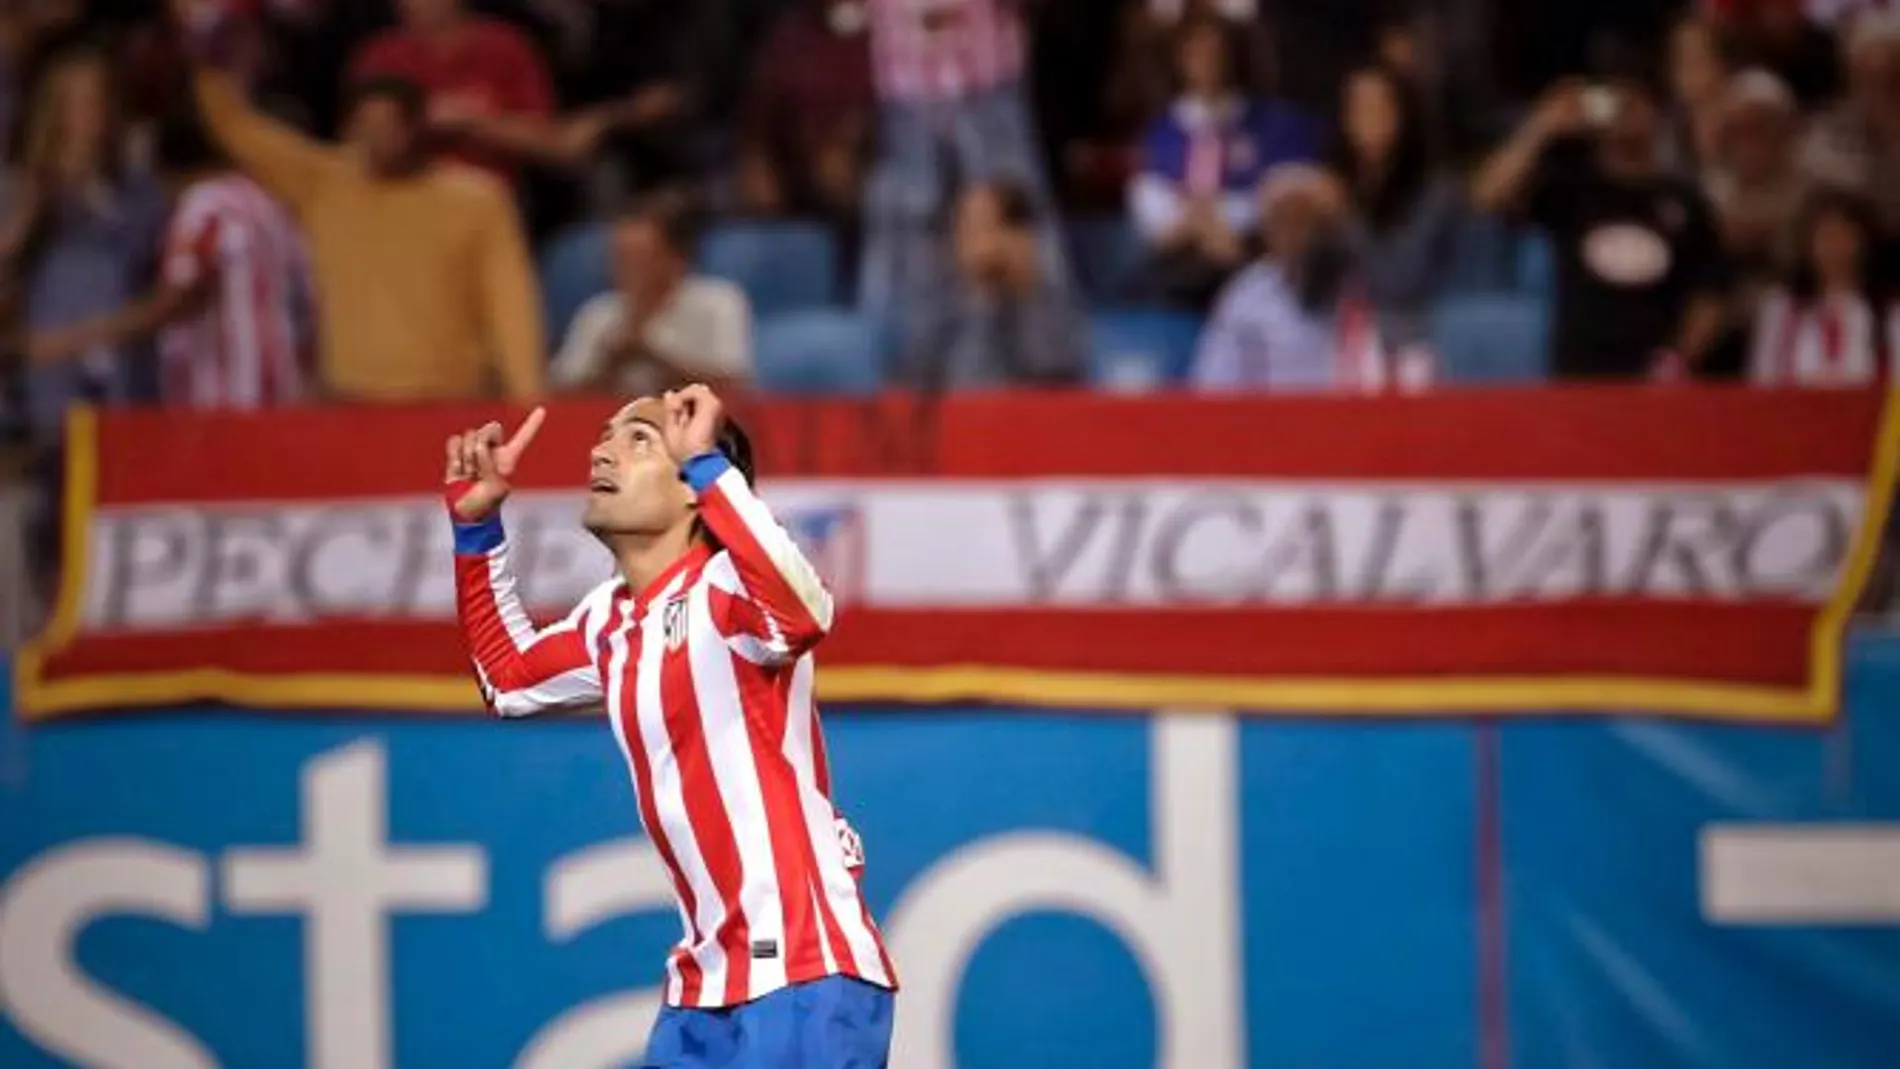 El delantero colombiano del Atlético de Madrid, Radamel Falcao, celebra la consecución del primer gol